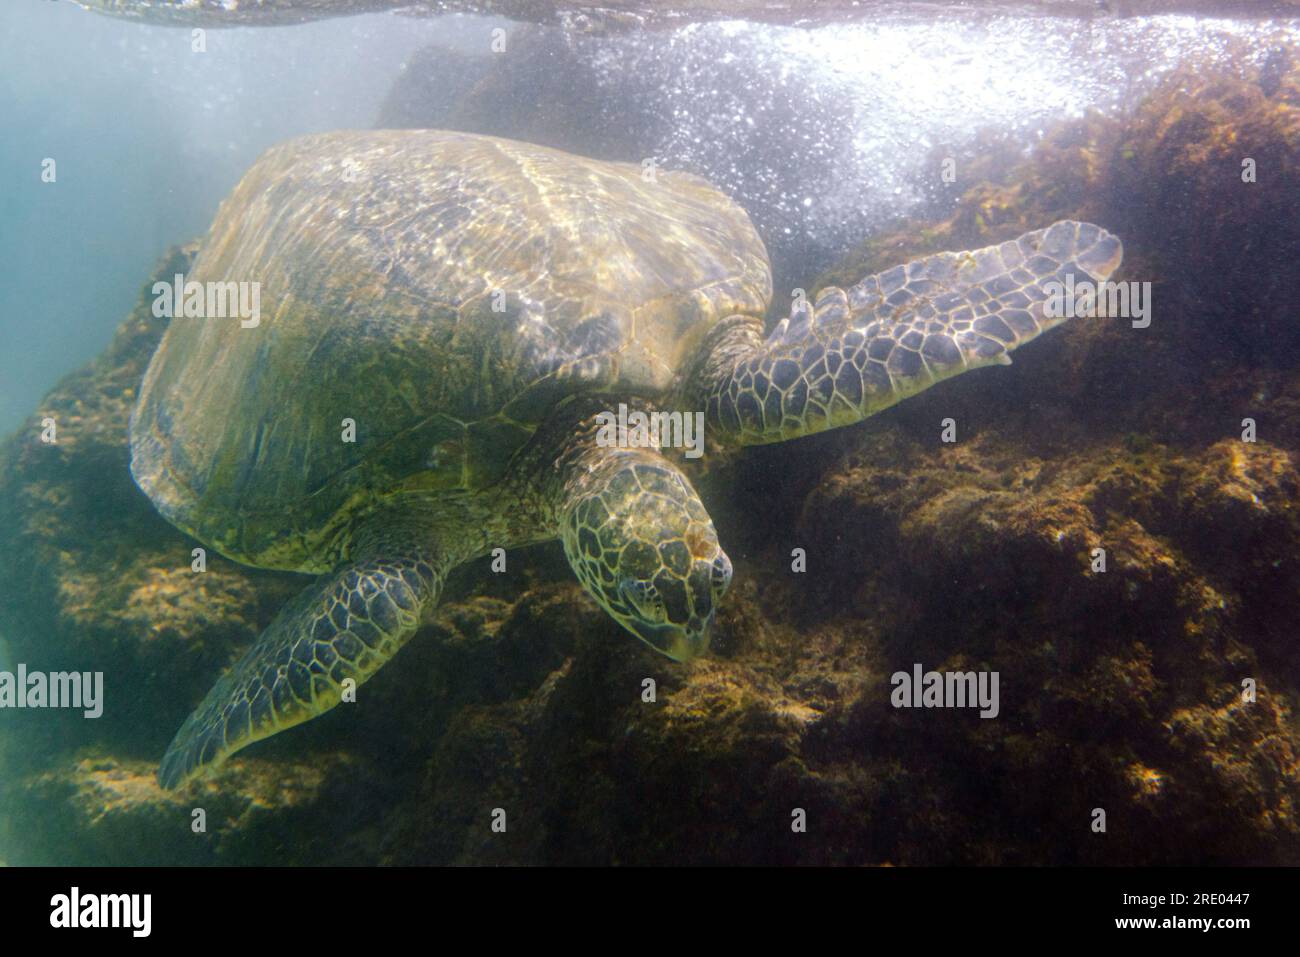 Tortue verte, tortue de roche, tortue de viande (Chelonia mydas), dans le surf mangeant des algues de roches de lave, vue de face, USA, Arizona, Maui, Kihei Banque D'Images